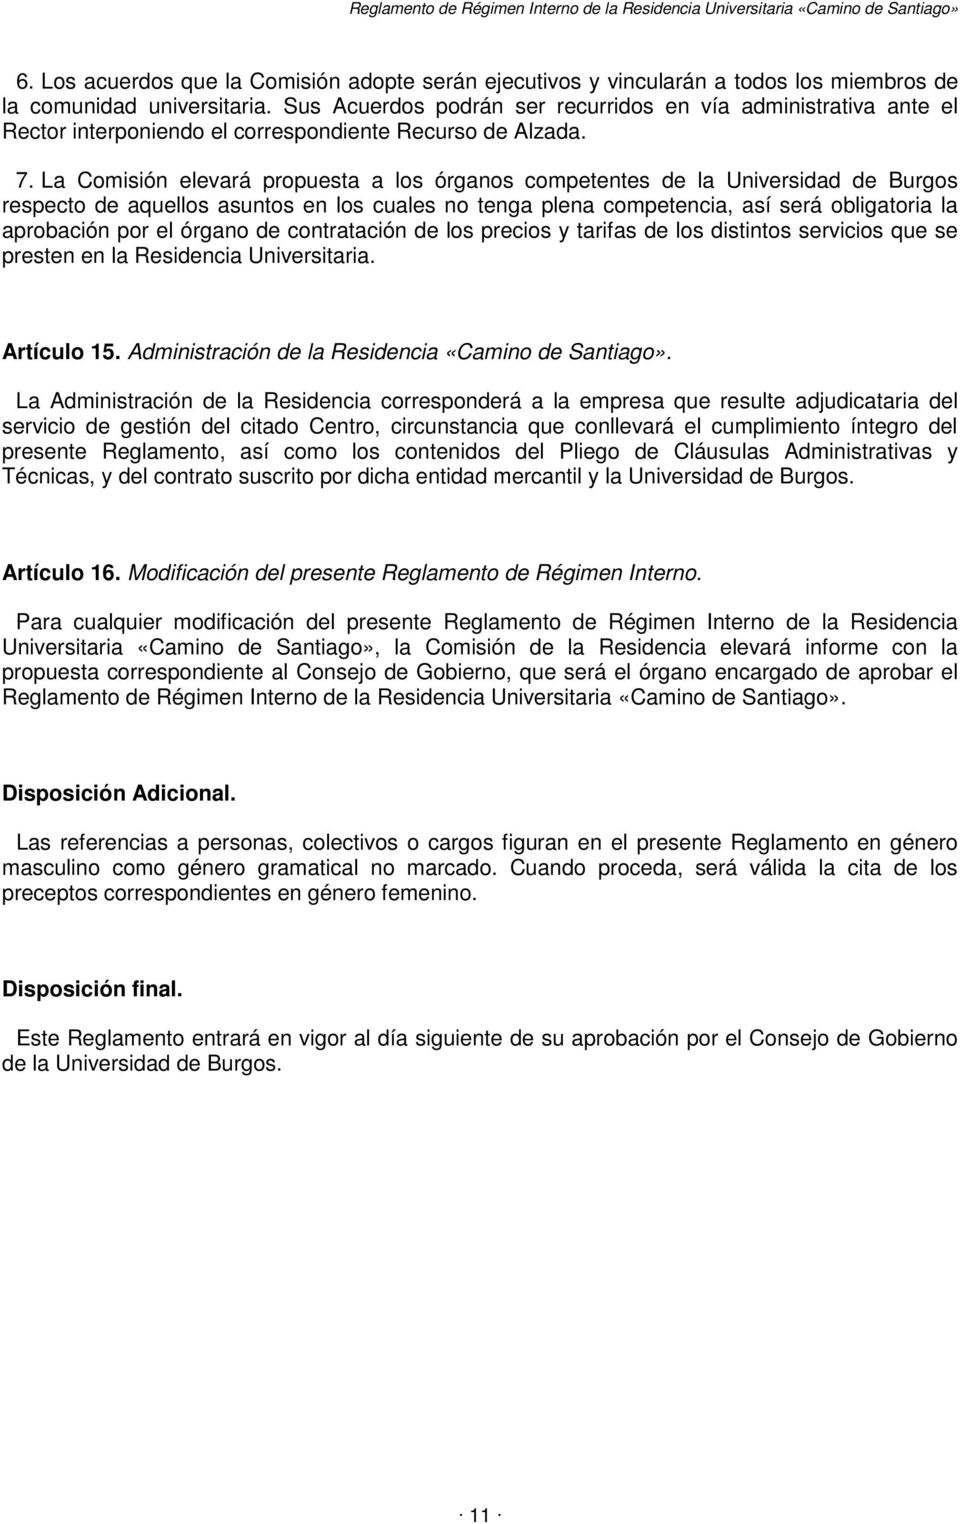 La Comisión elevará propuesta a los órganos competentes de la Universidad de Burgos respecto de aquellos asuntos en los cuales no tenga plena competencia, así será obligatoria la aprobación por el